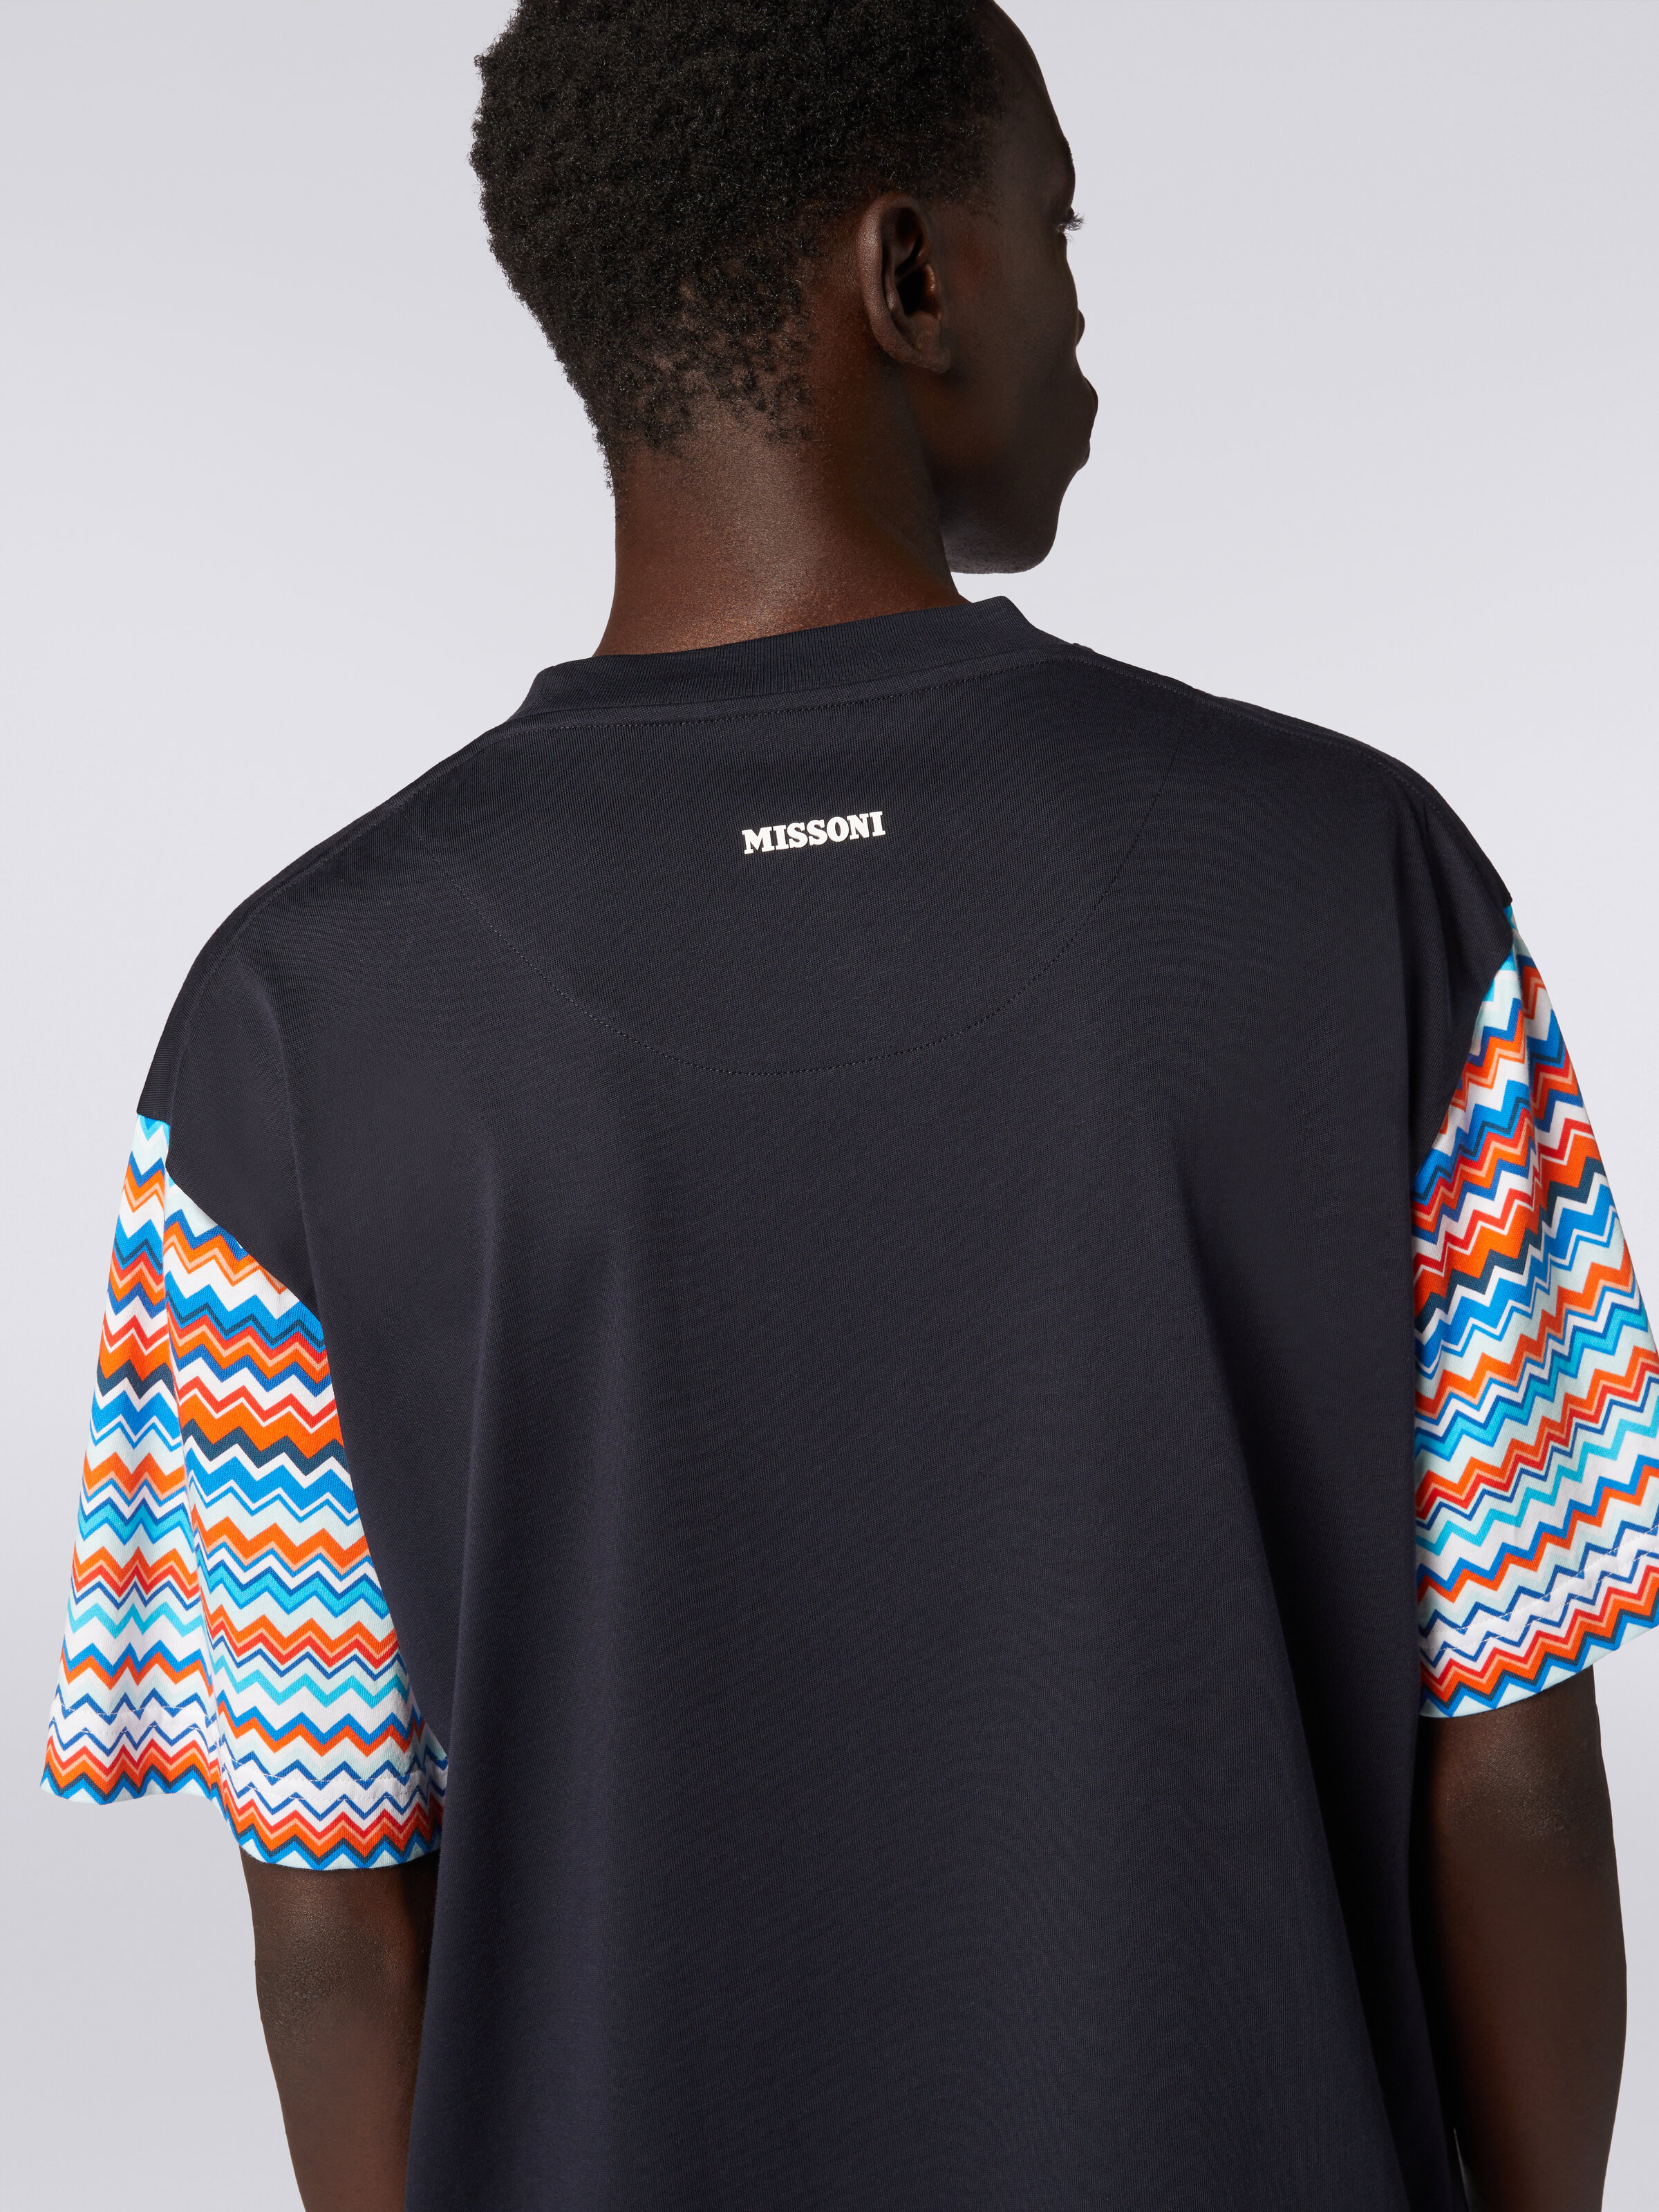 T-shirt oversize in cotone con inserti zig zag, Multicolore  - 4